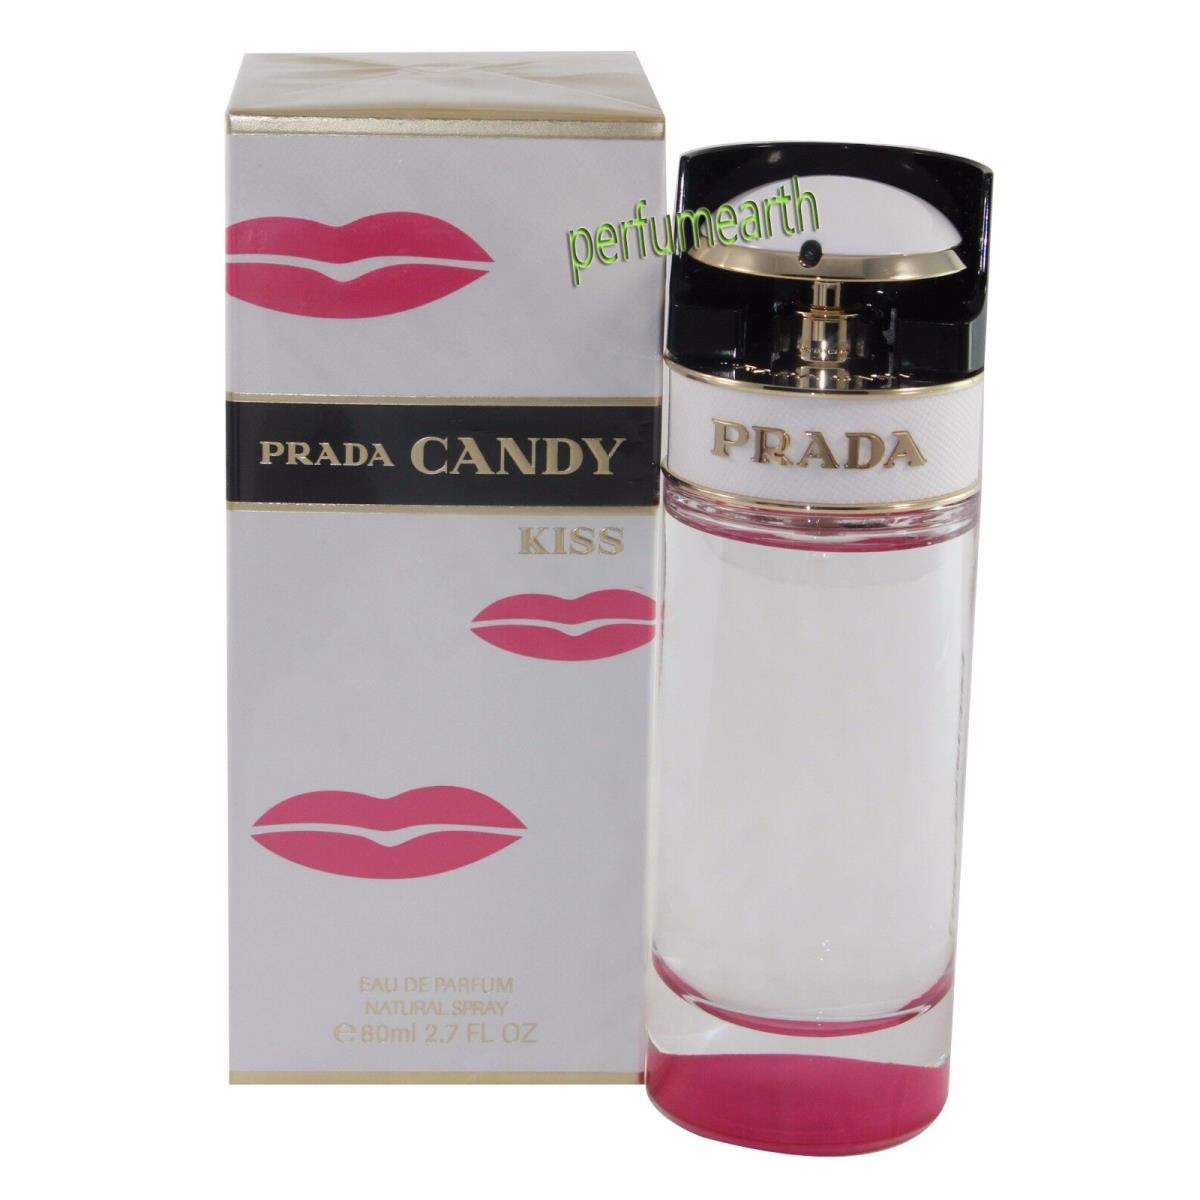 Prada Candy Kiss by Prada 2.7 oz Eau De Parfum Spray For Women